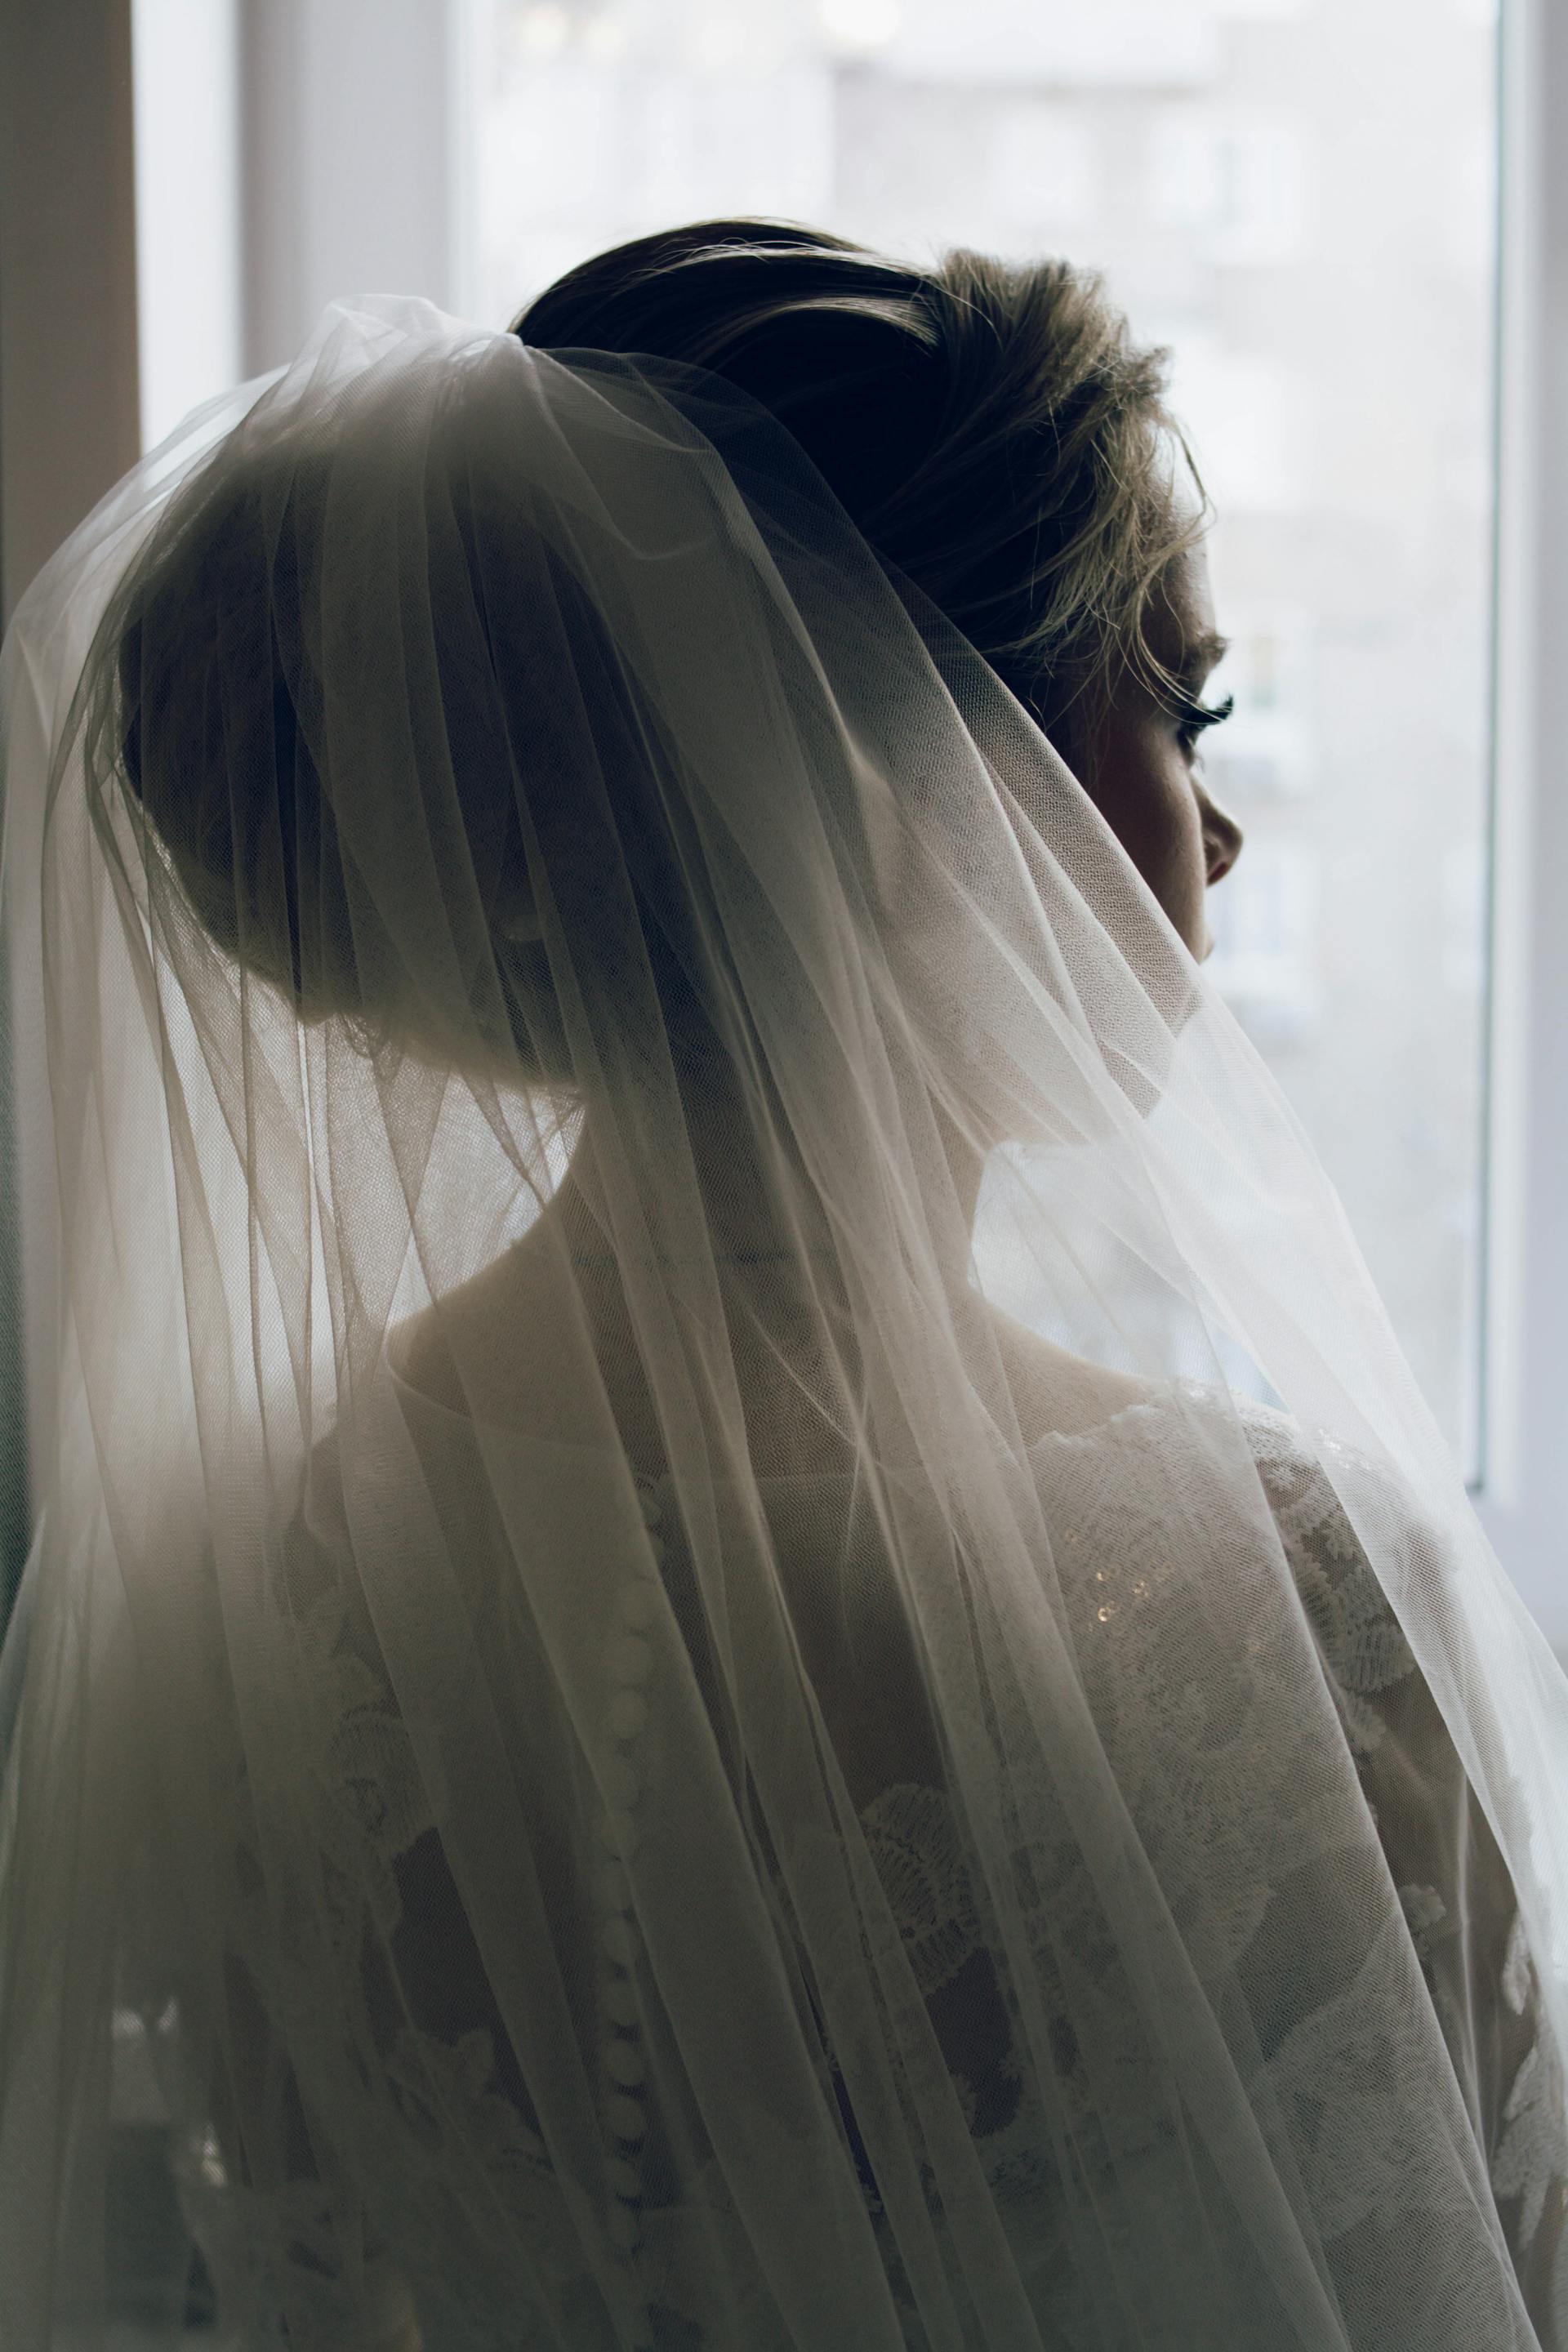 Une mariée en robe de mariée et voile regardant par la fenêtre | Source : Pexels